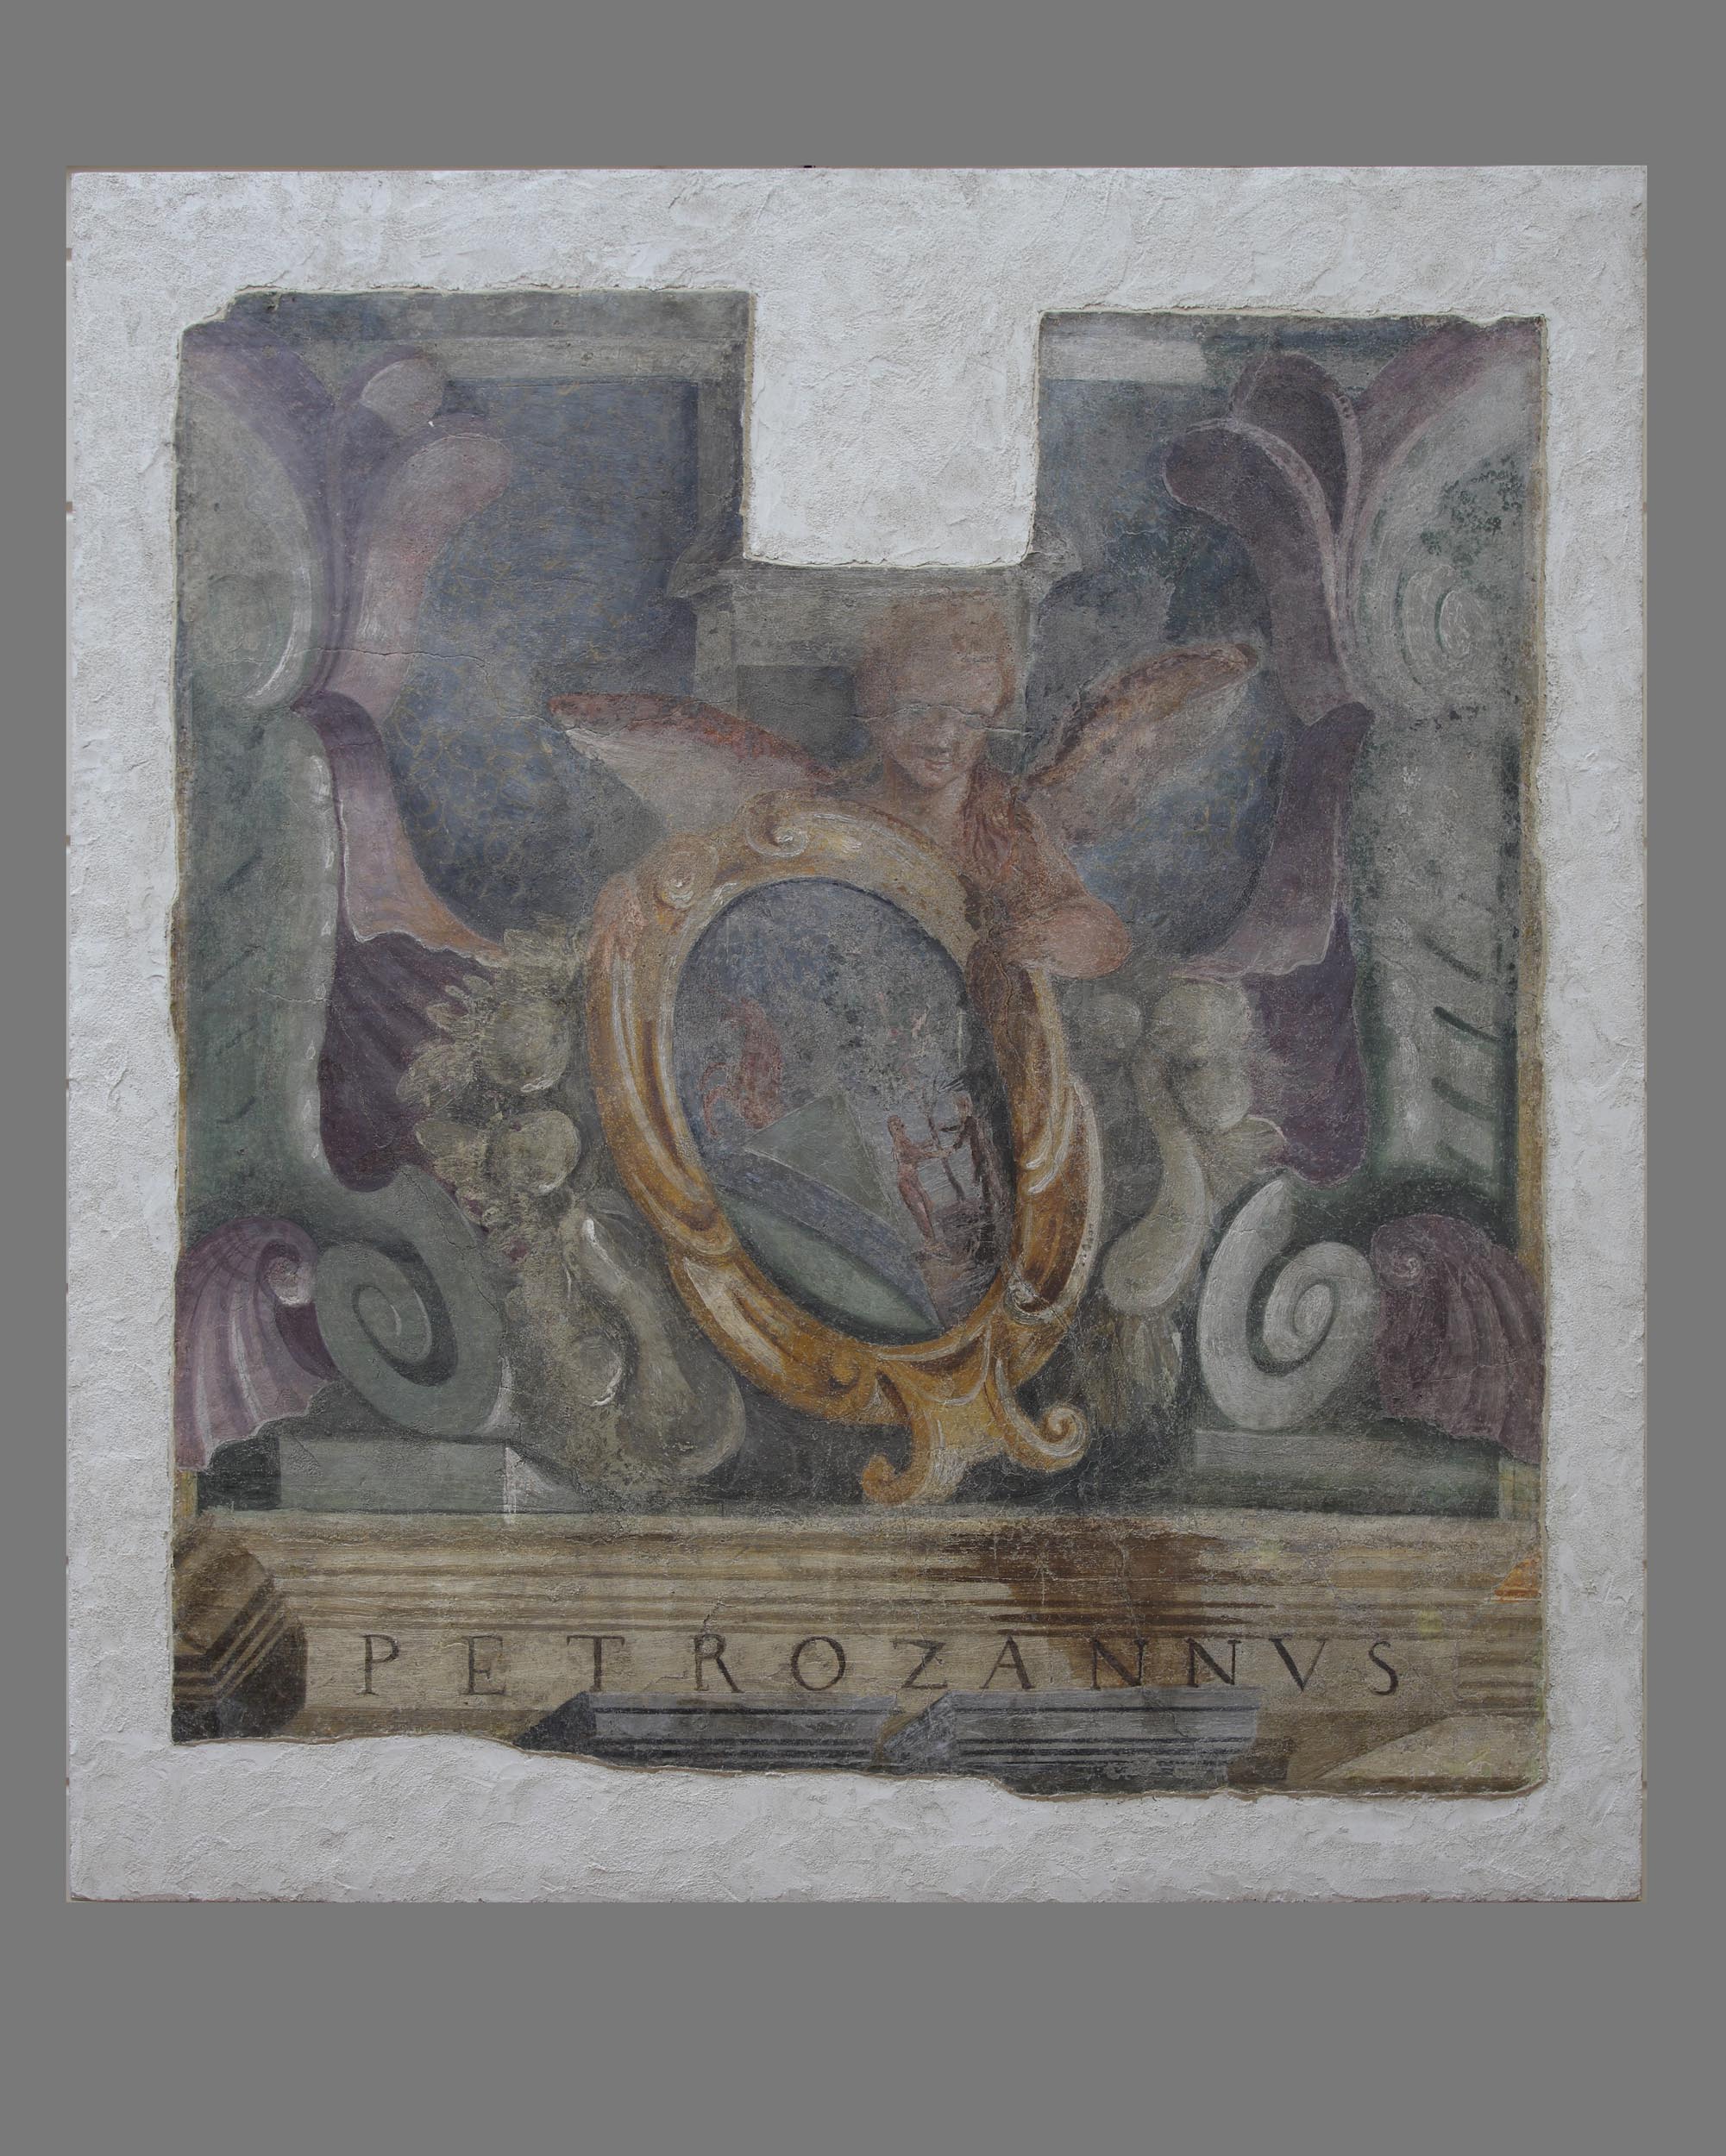 trionfi di Cesare e figure allegoriche (dipinto, ciclo) di Dondi Ludovico (attribuito) - ambito mantovano (sec. XVI, sec. XVII)